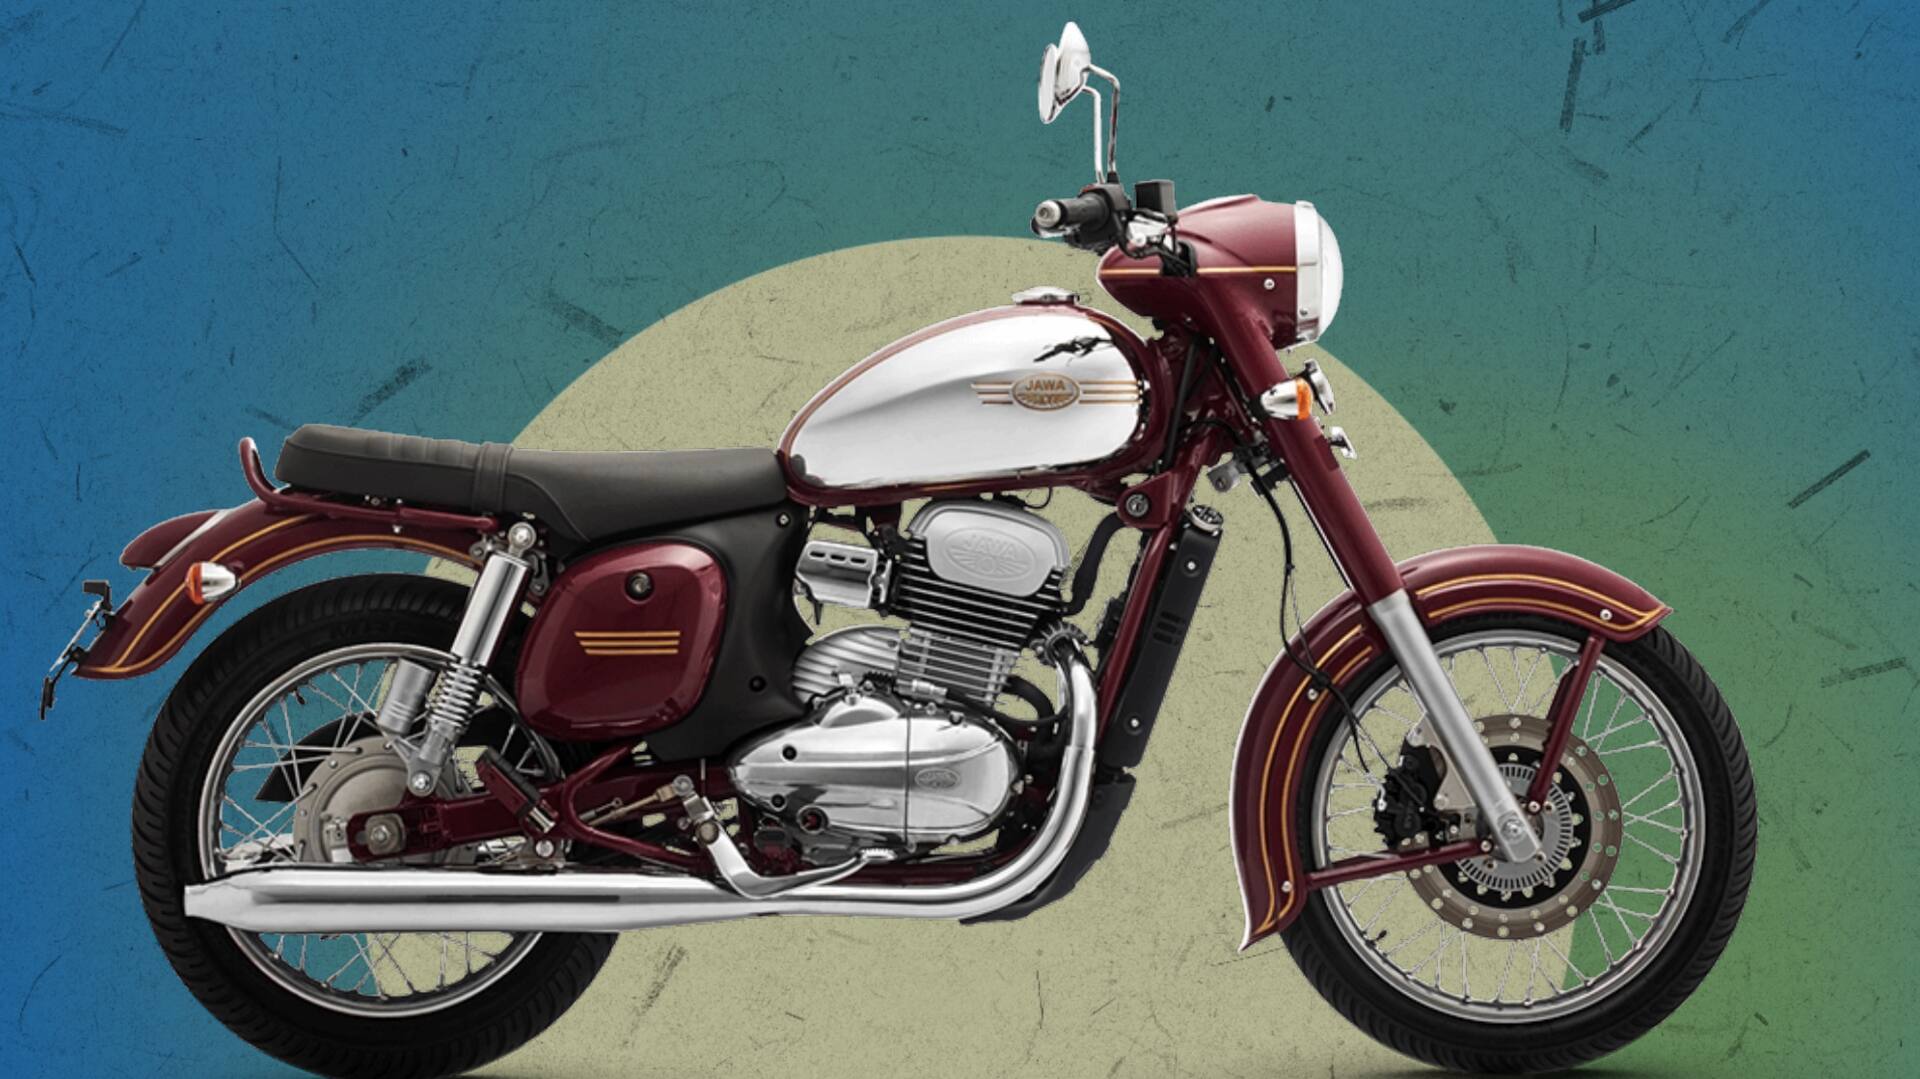 जावा जल्द उतारेगी 350cc की नई बाइक, जावा स्टैंडर्ड पर है आधारित